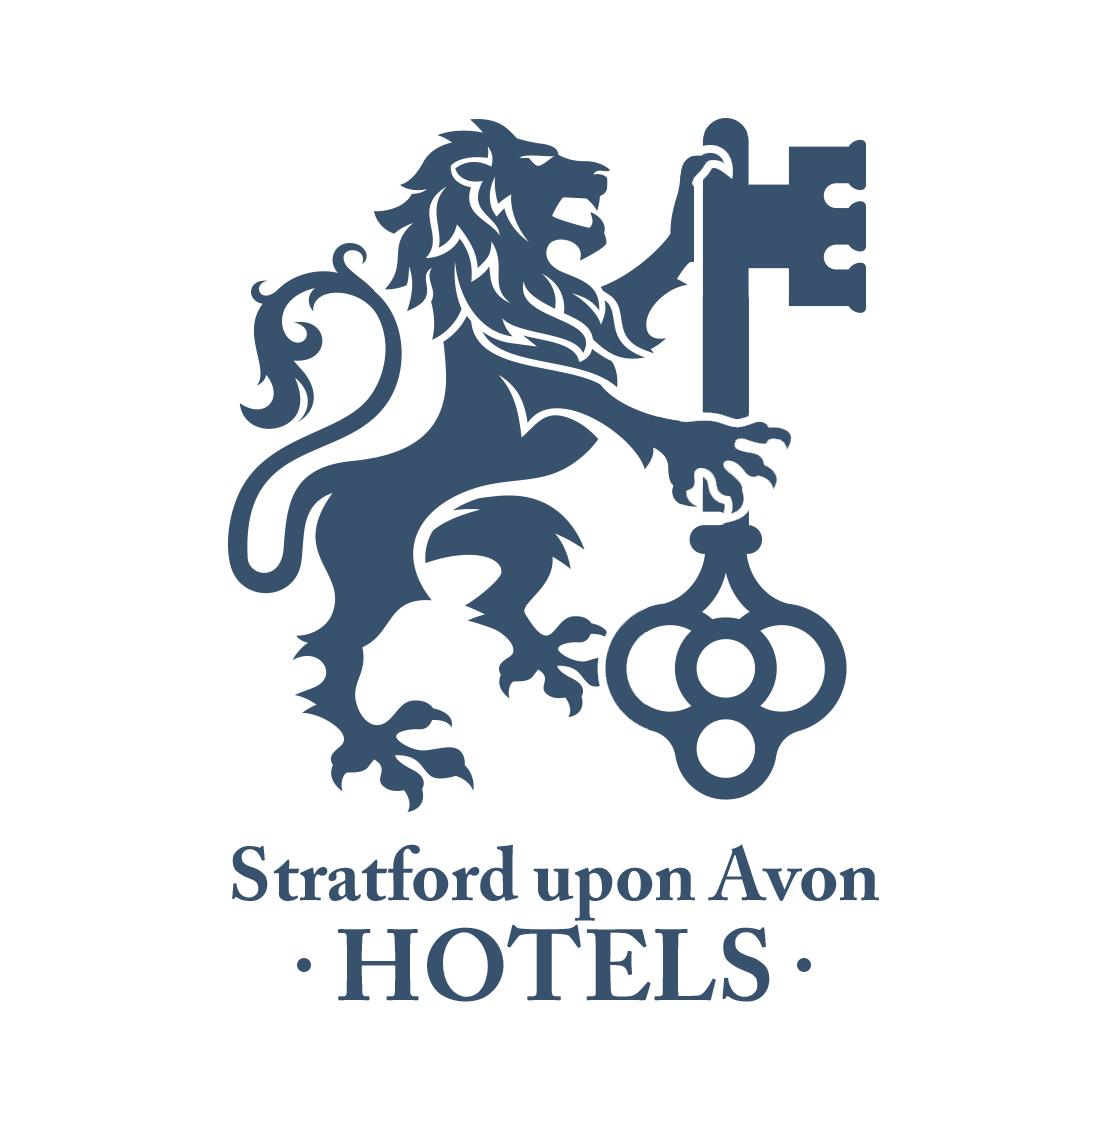 Stratford upon avon hotels